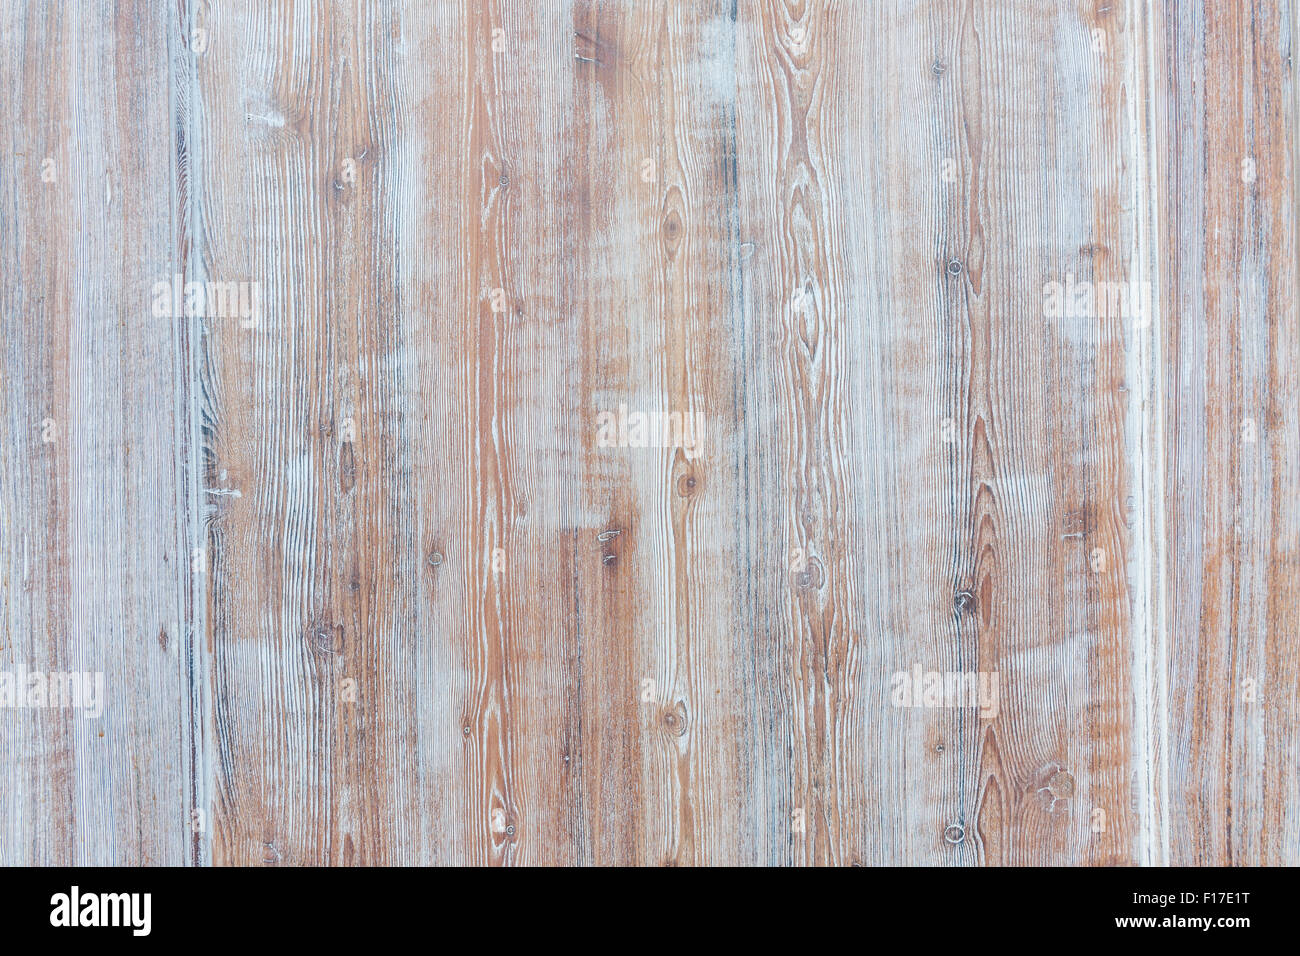 Im Alter von hölzernen Hintergrund der verwitterten distressed rustikal Holzplatten mit verblassten Licht blauer Farbe braun Woodgrain Struktur zeigen Stockfoto